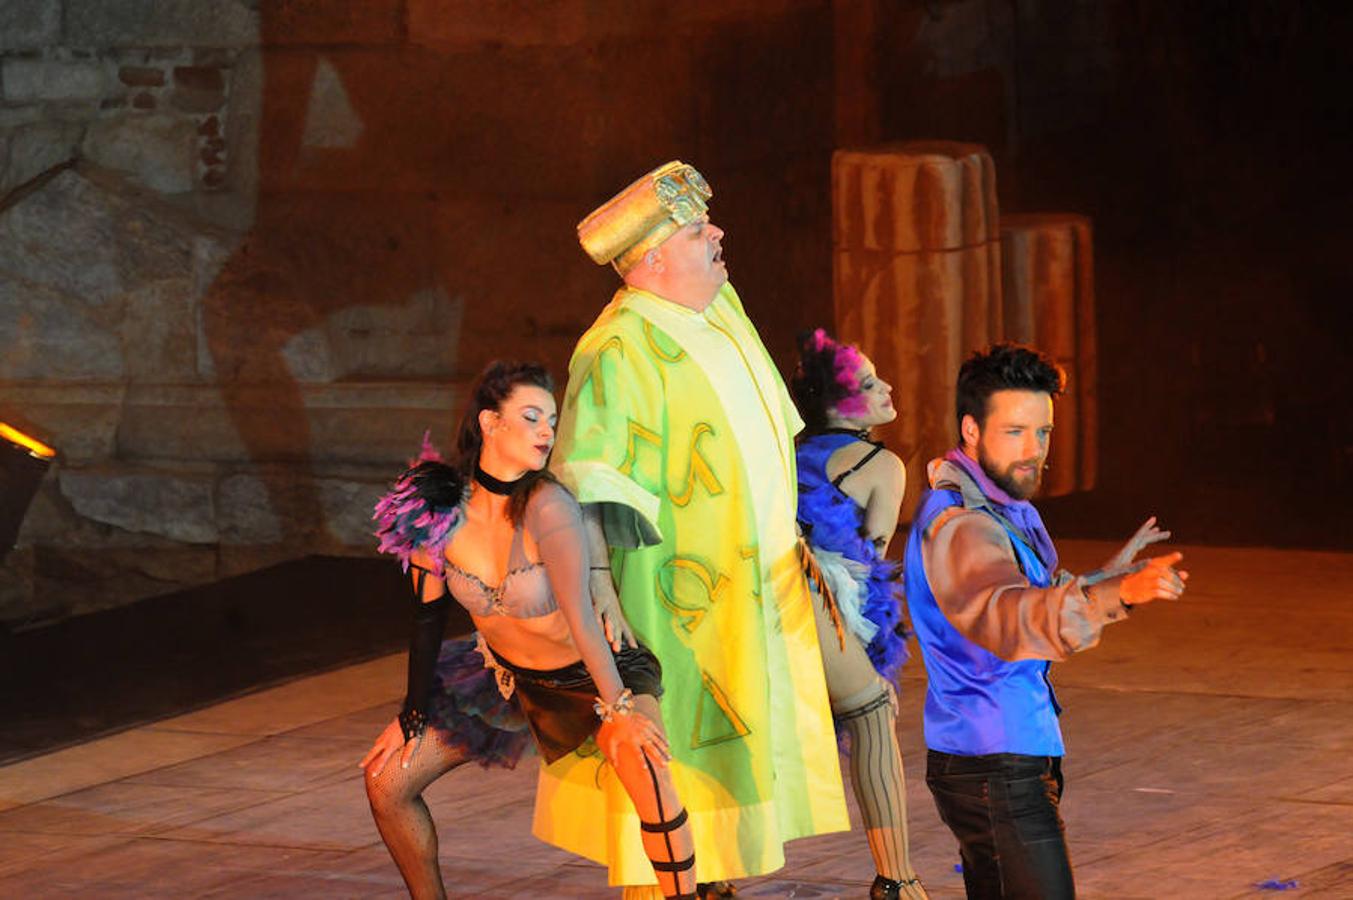 El estreno de esta obra de Miguel Murillo conquista con las risas del público del Teatro Romano en el Festival de Mérida. Así, bajo la dirección de Ricard Reguant se cambia de registro, ya que pasa de la tragedia de las representaciones anteriores a la comedia musical.